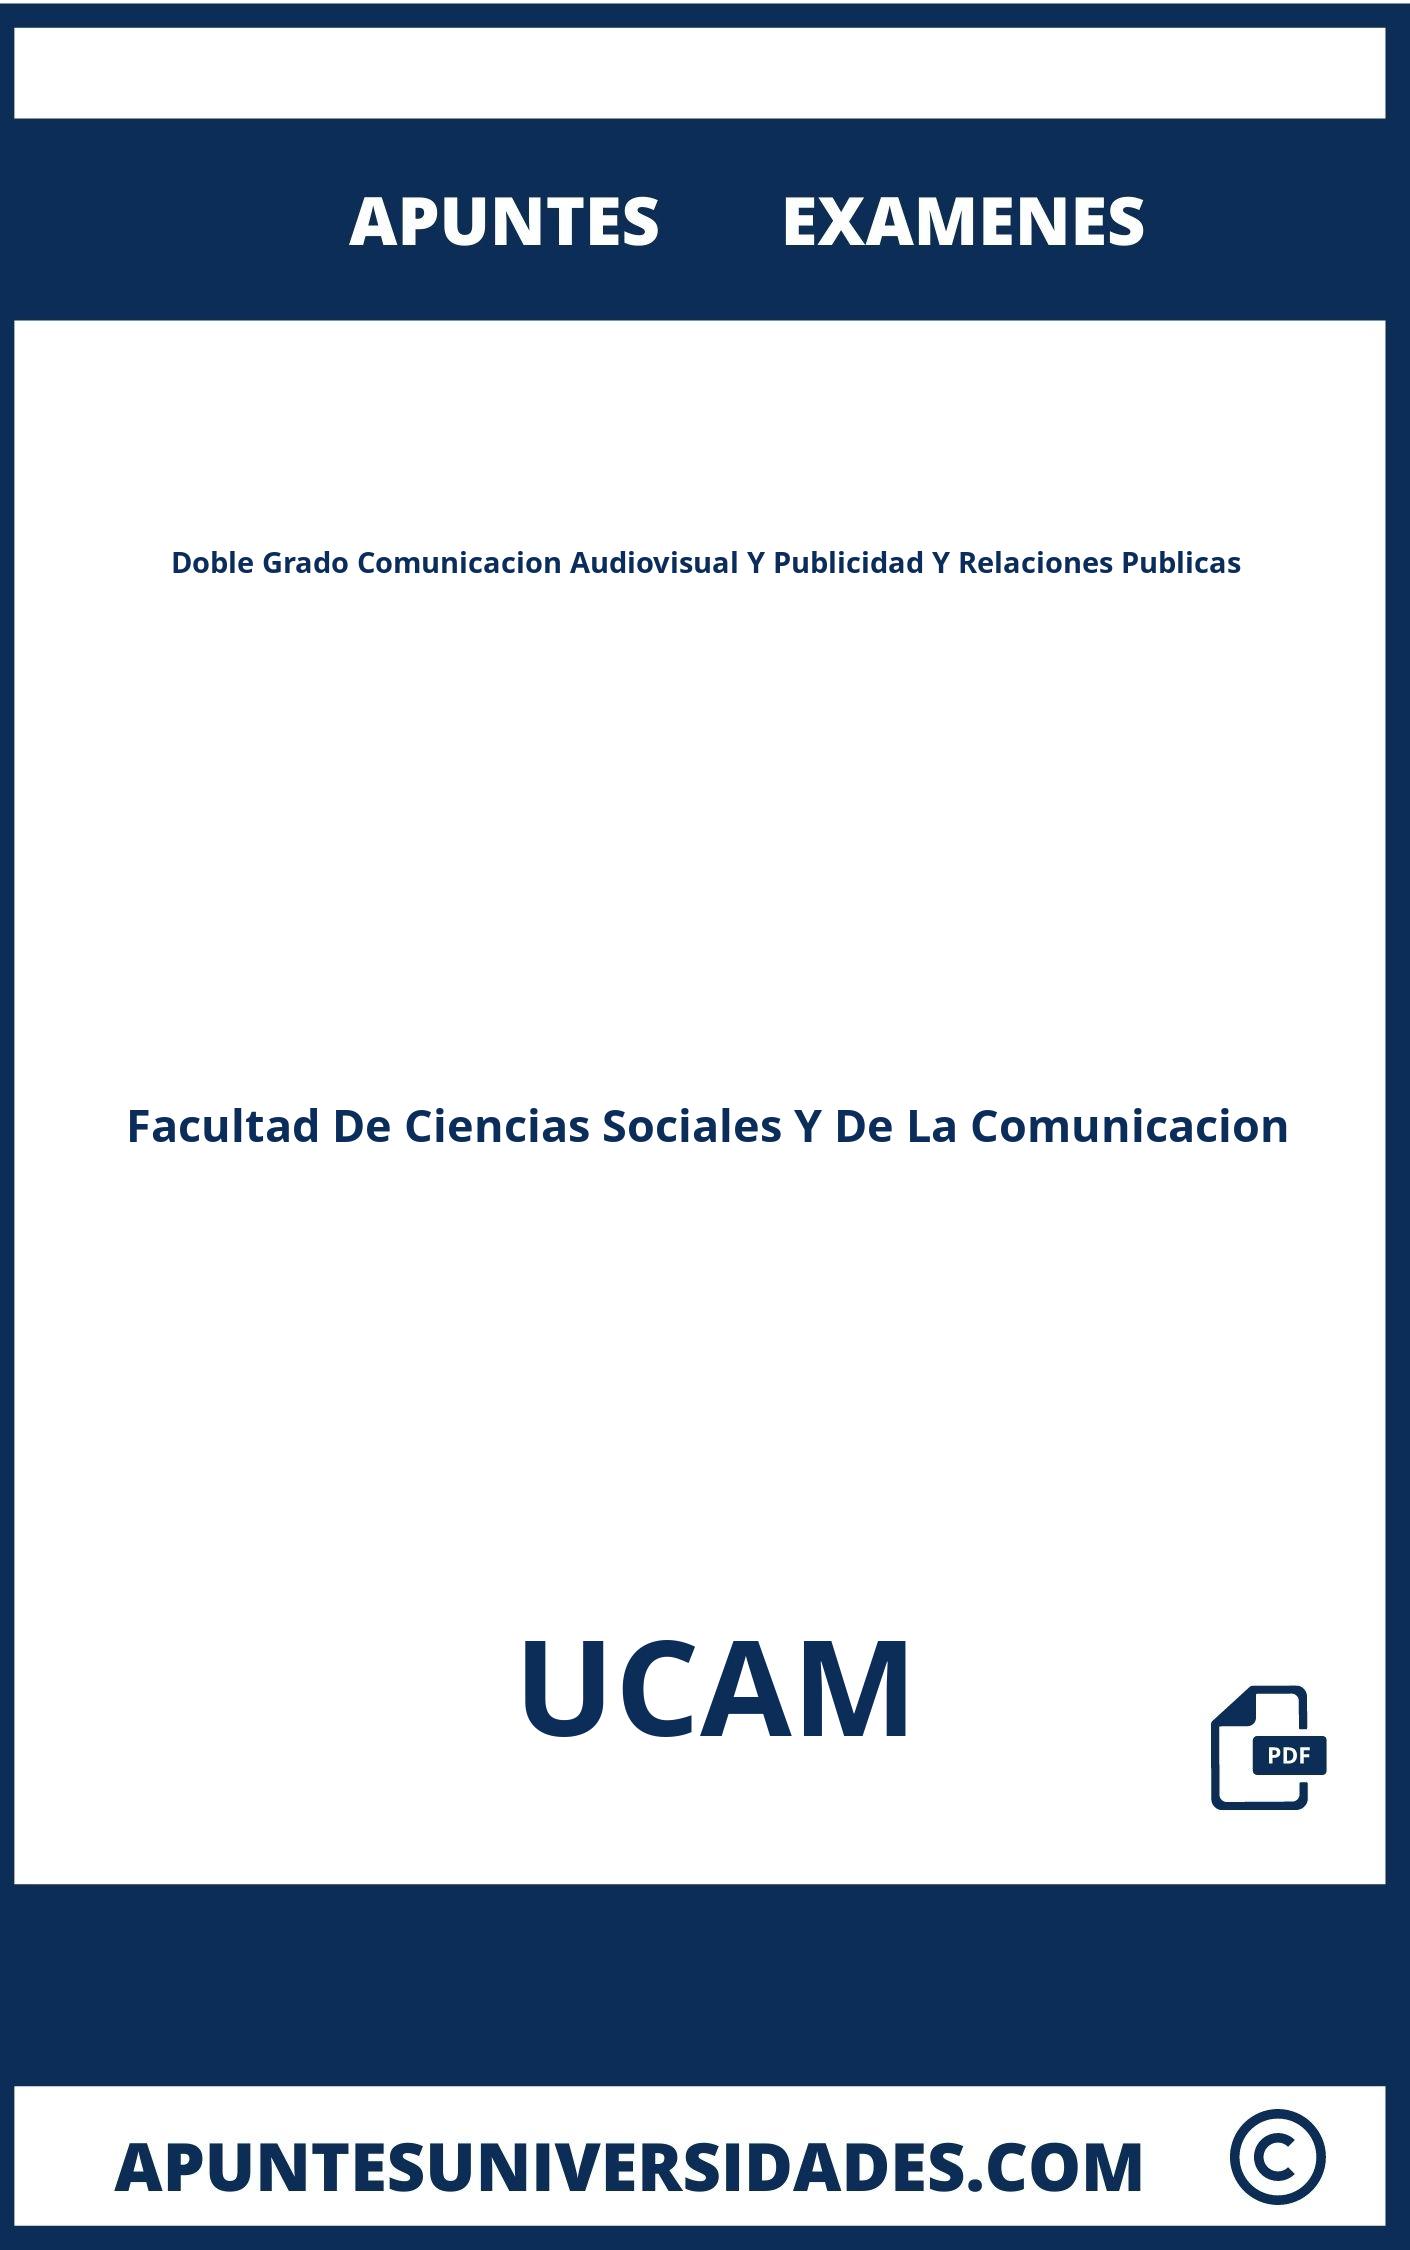 Apuntes y Examenes Doble Grado Comunicacion Audiovisual Y Publicidad Y Relaciones Publicas UCAM